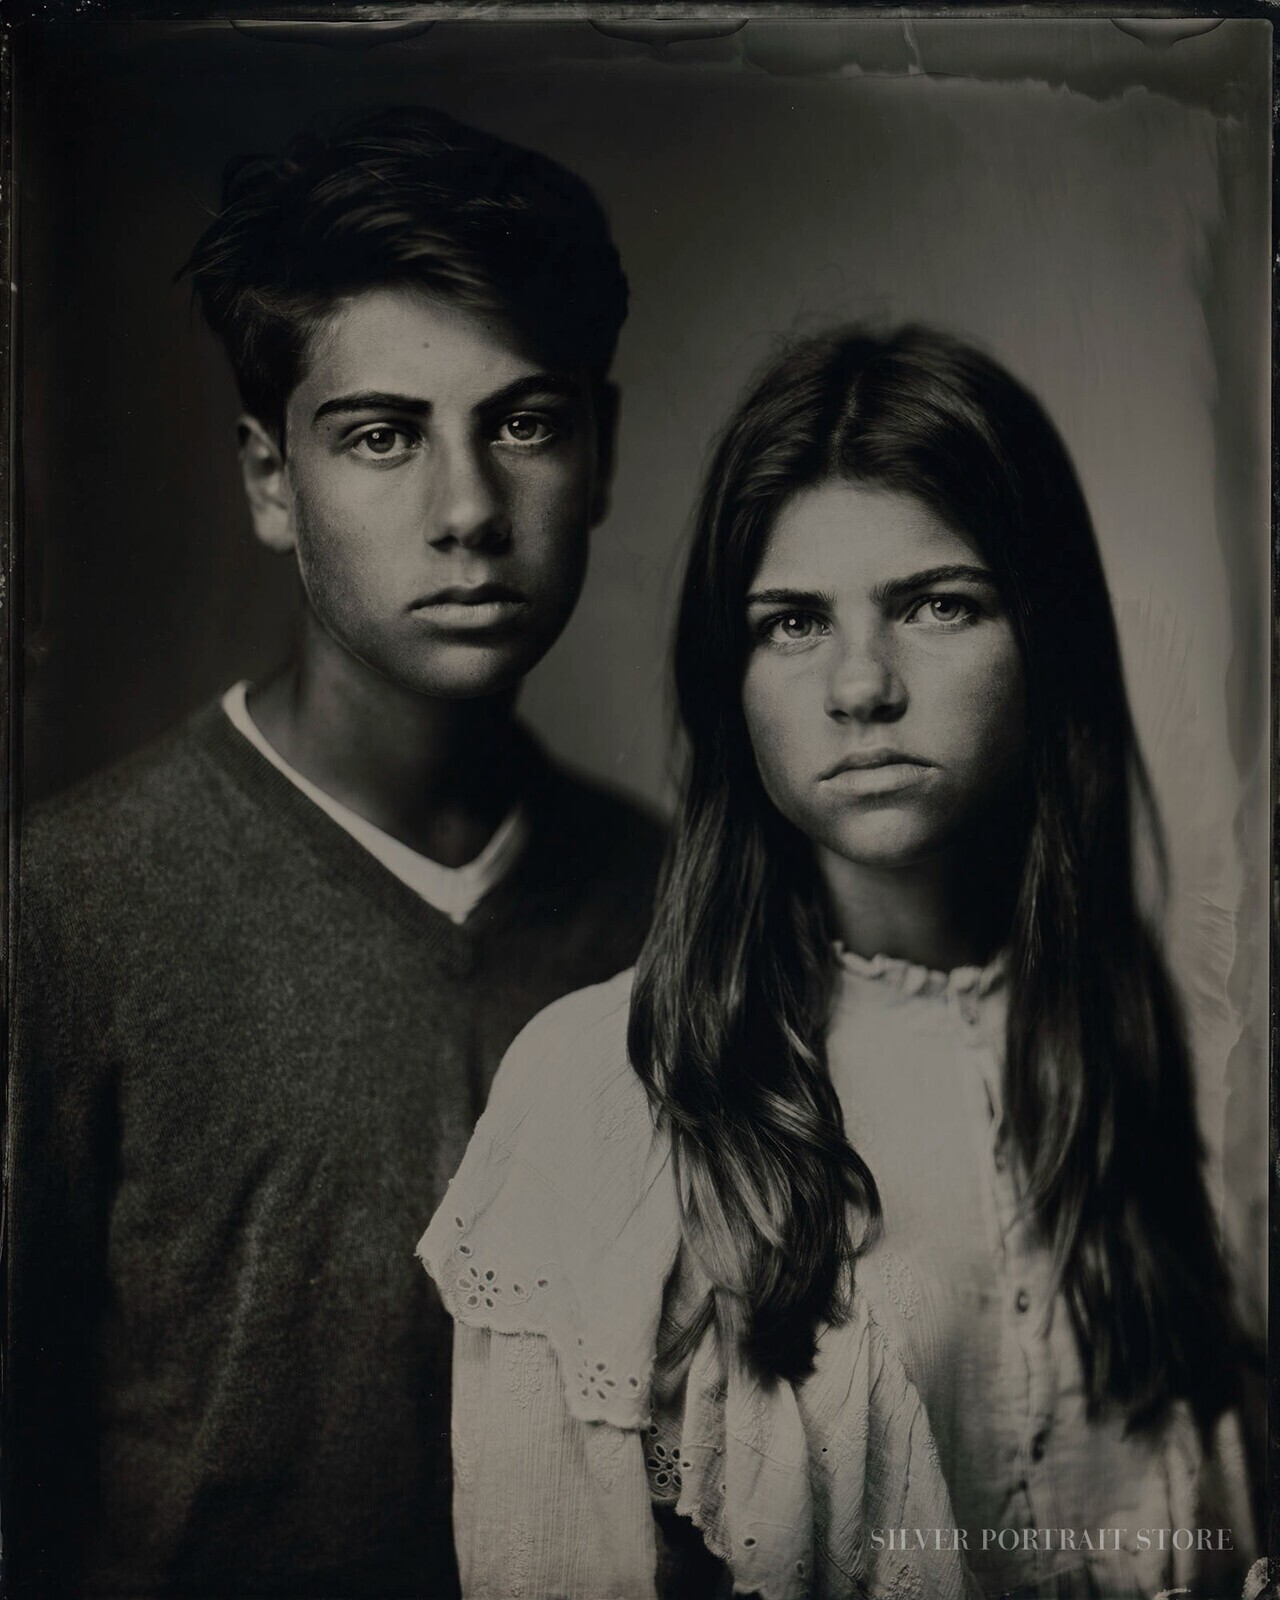 Samuel en Hannah-Silver Portrait Store-Wet plate collodion-Tintype 20 x 25 cm